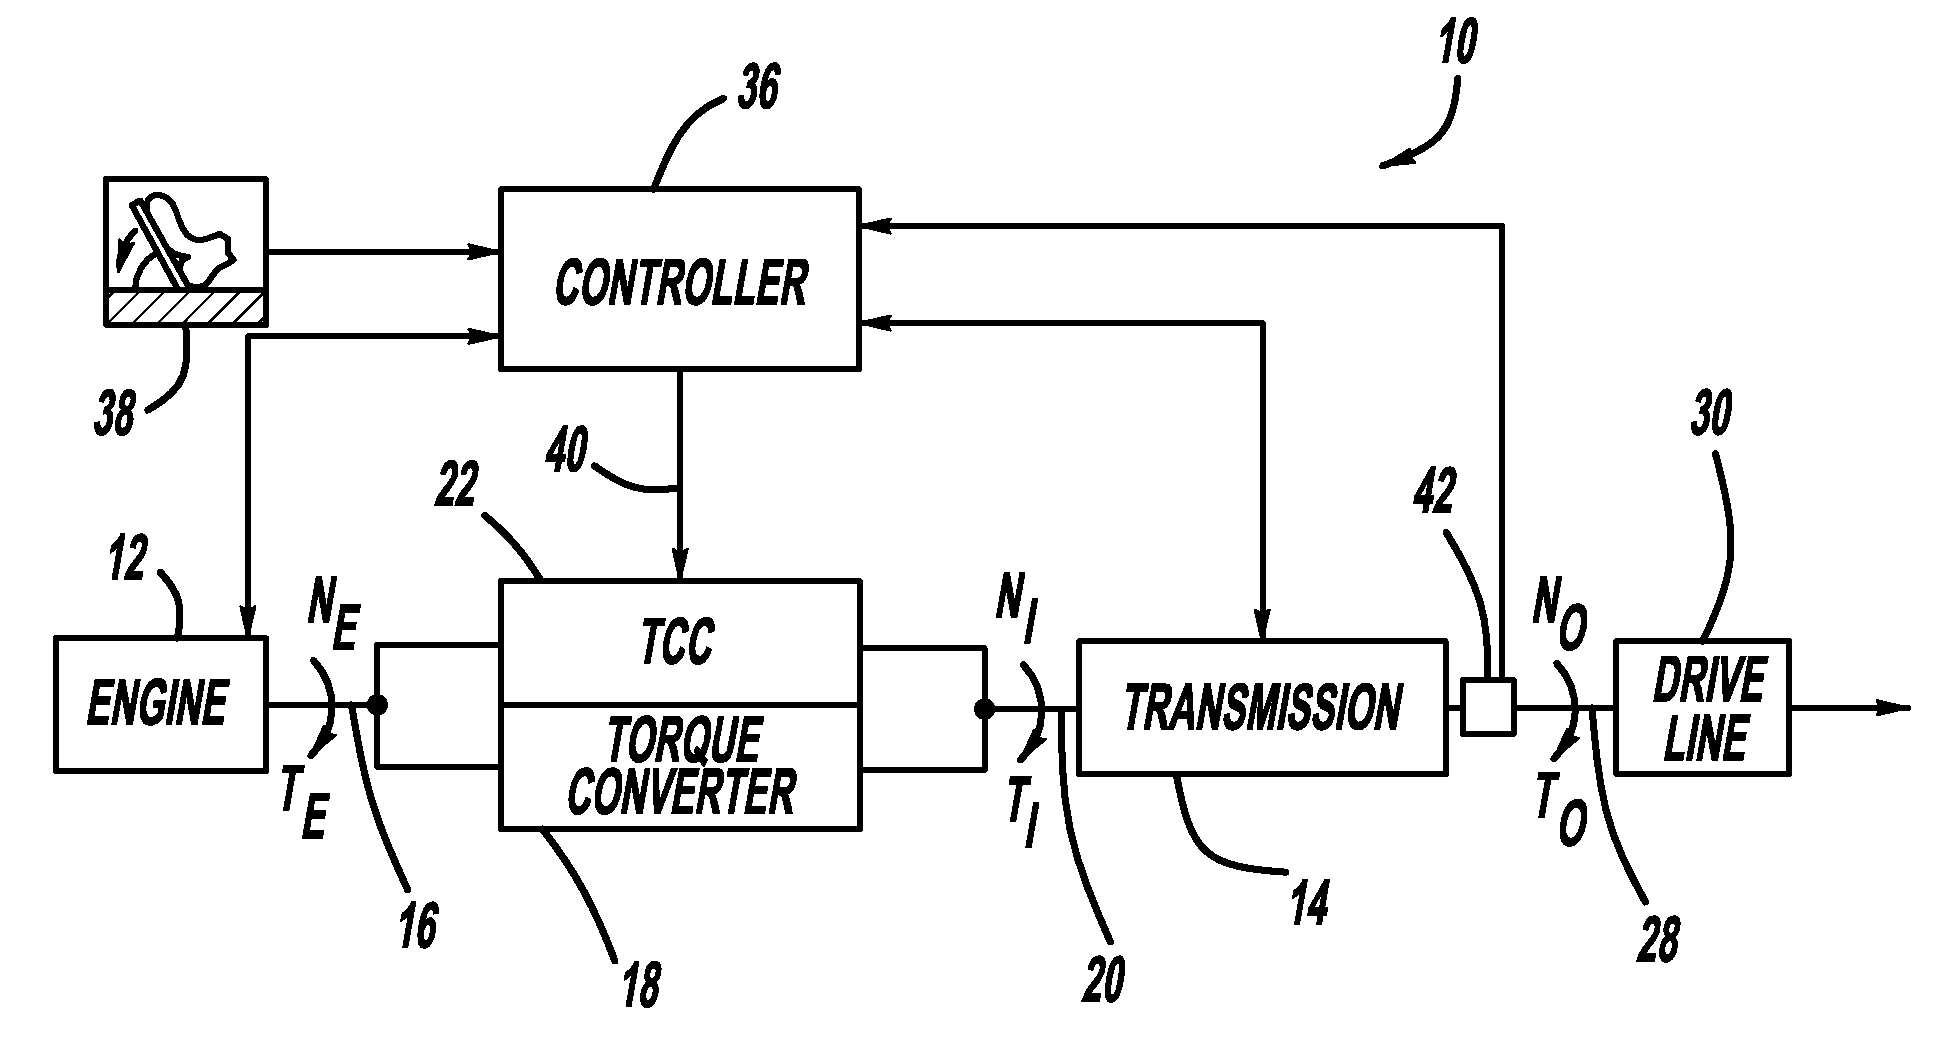 Effective driveline vibration detection algorithm in transmission tcc slip control